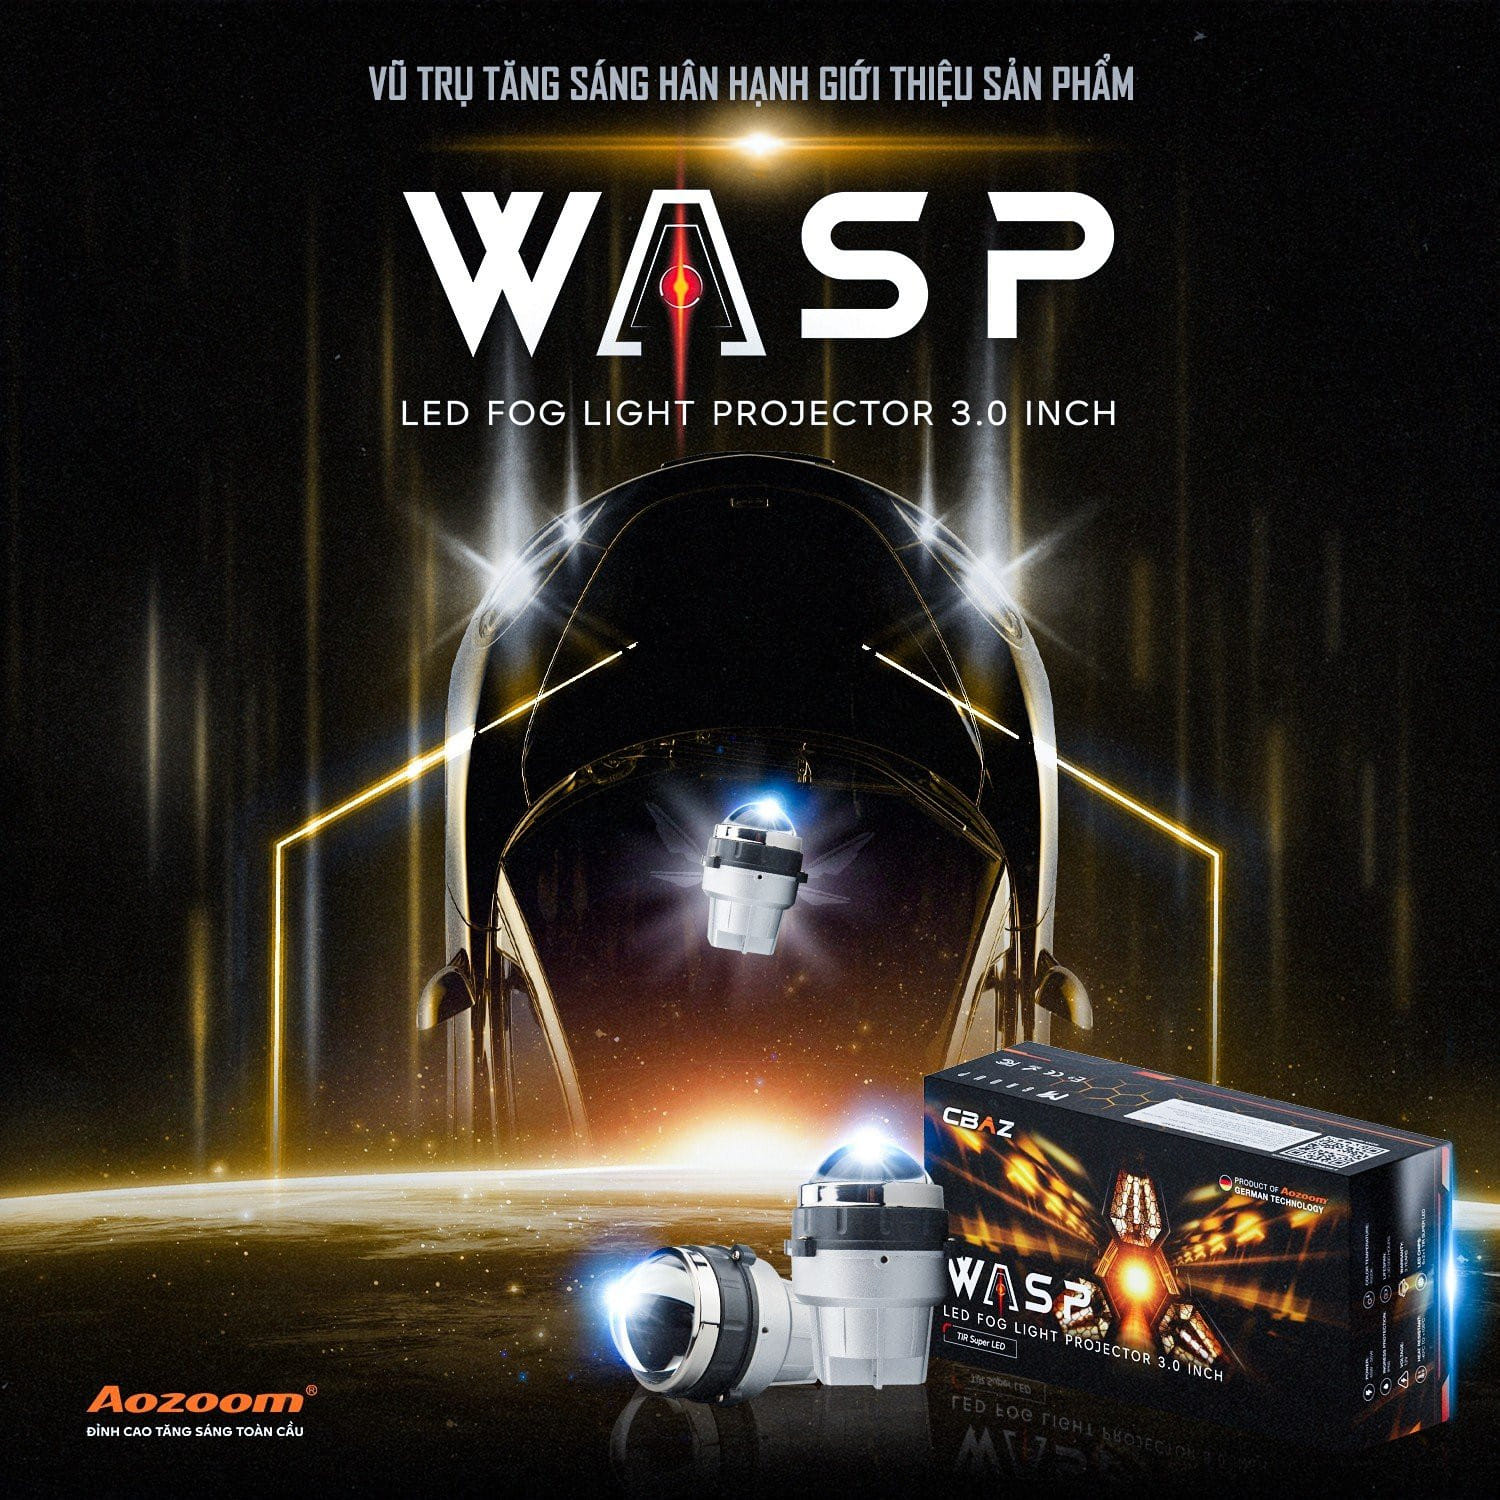 WASP LED FOG LIGHT